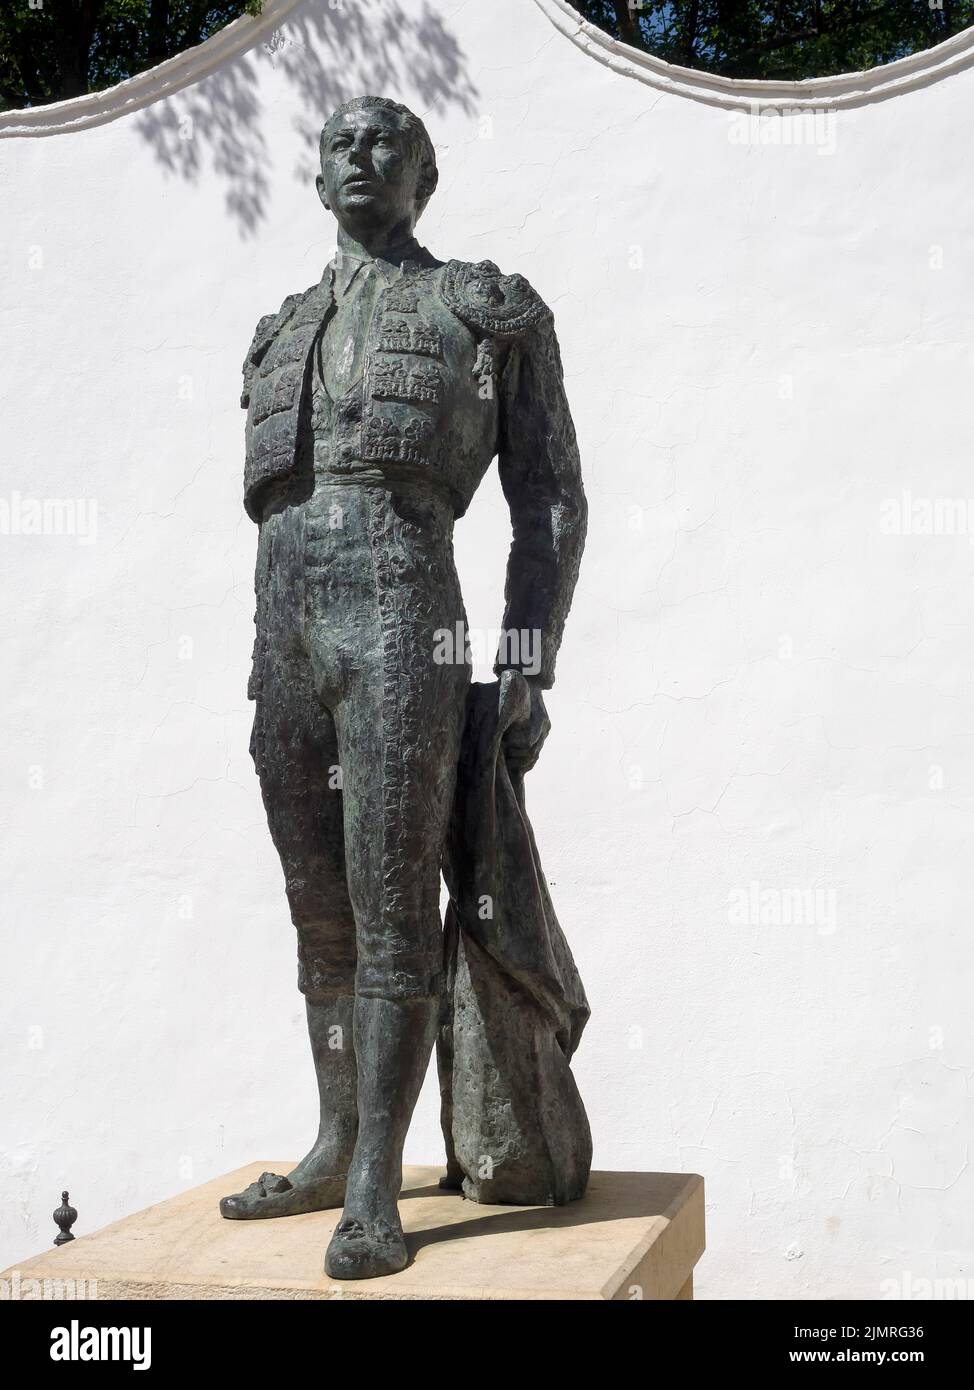 RONDA, ANDALUCIA/ESPAGNE - MAI 8 : Statue de l'arôtighter Antonio ordoñez à Ronda Andalucia Espagne sur 8 mai 2014 Banque D'Images